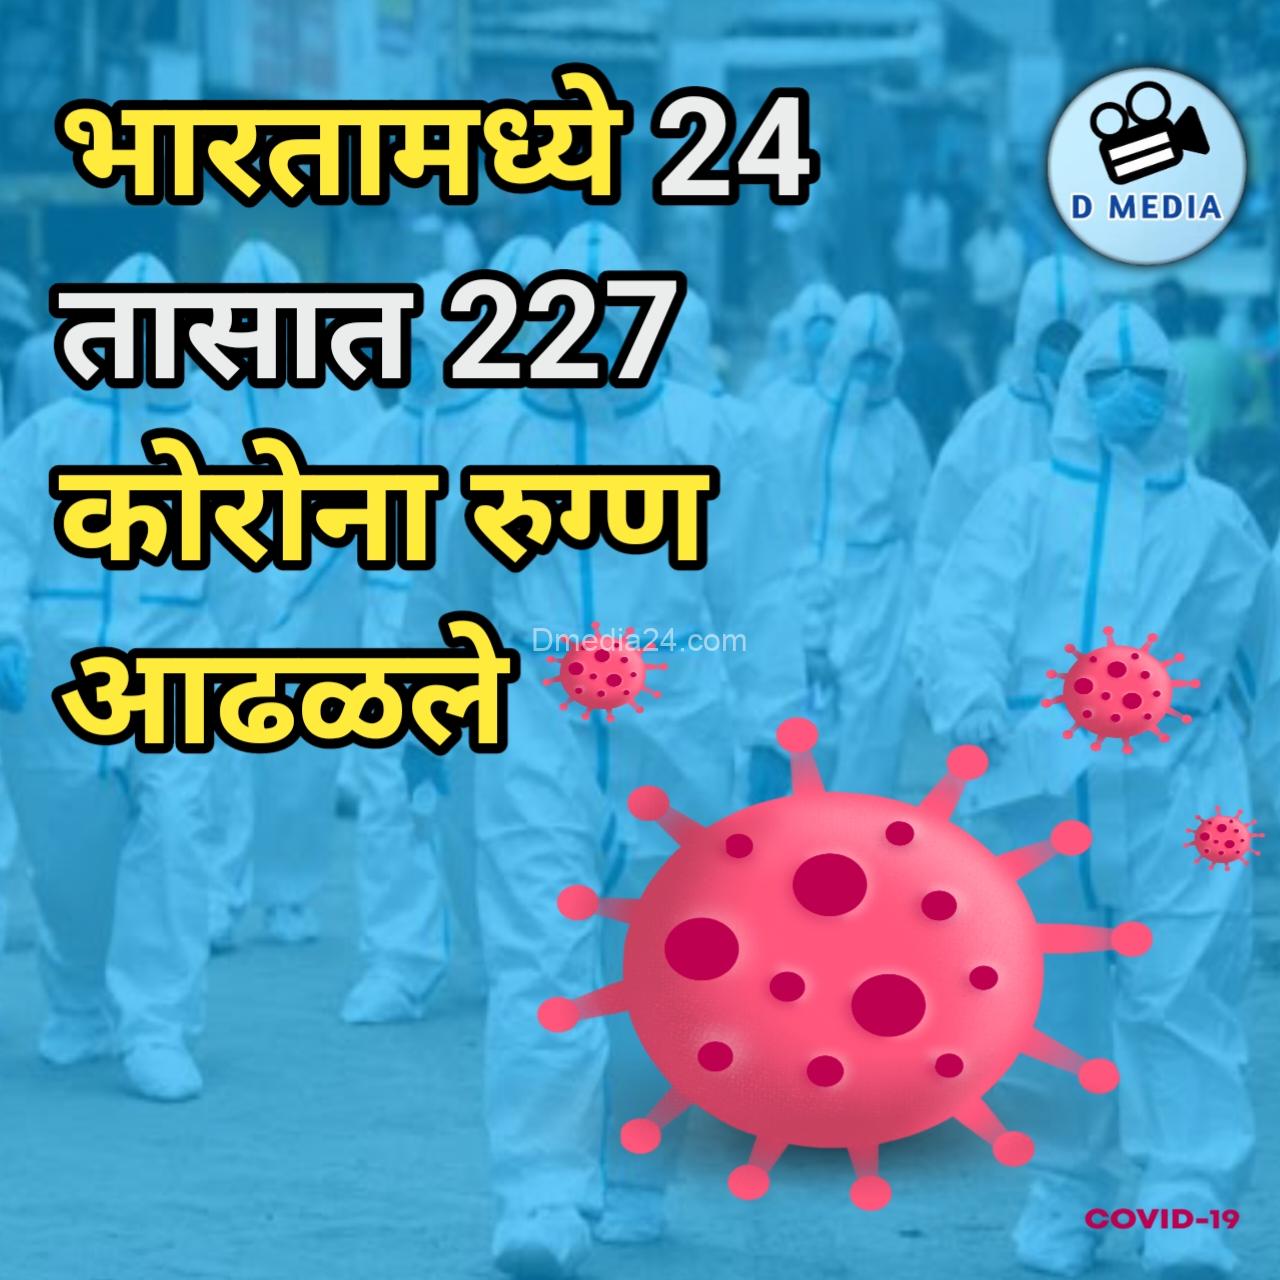 भारतामध्ये 24 तासात 227 कोरोना रुग्ण आढळले 